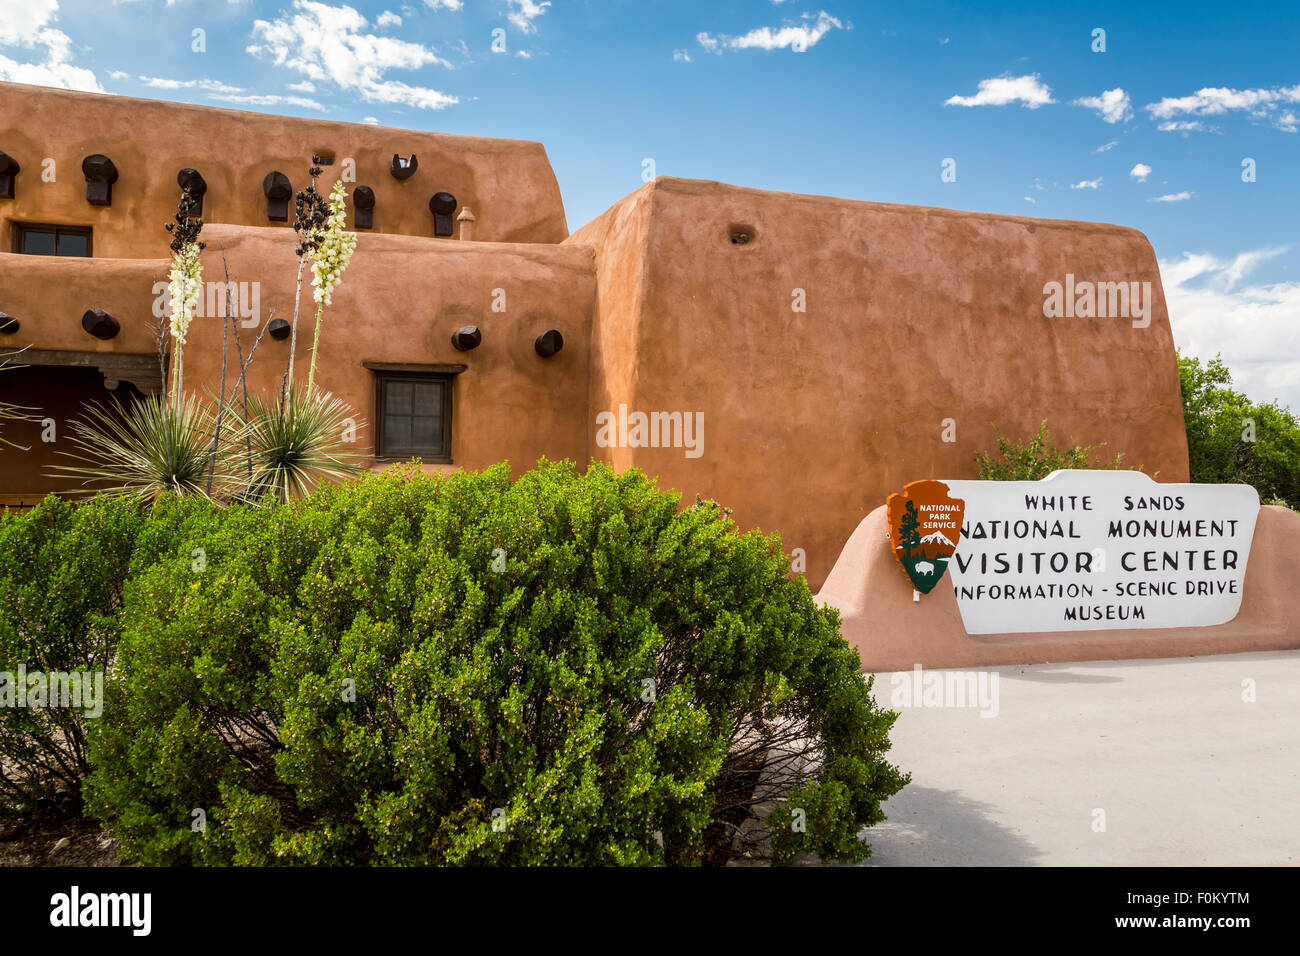 The White Sands National Monument near Alamogordo, New Mexico, USA. Stock Photo